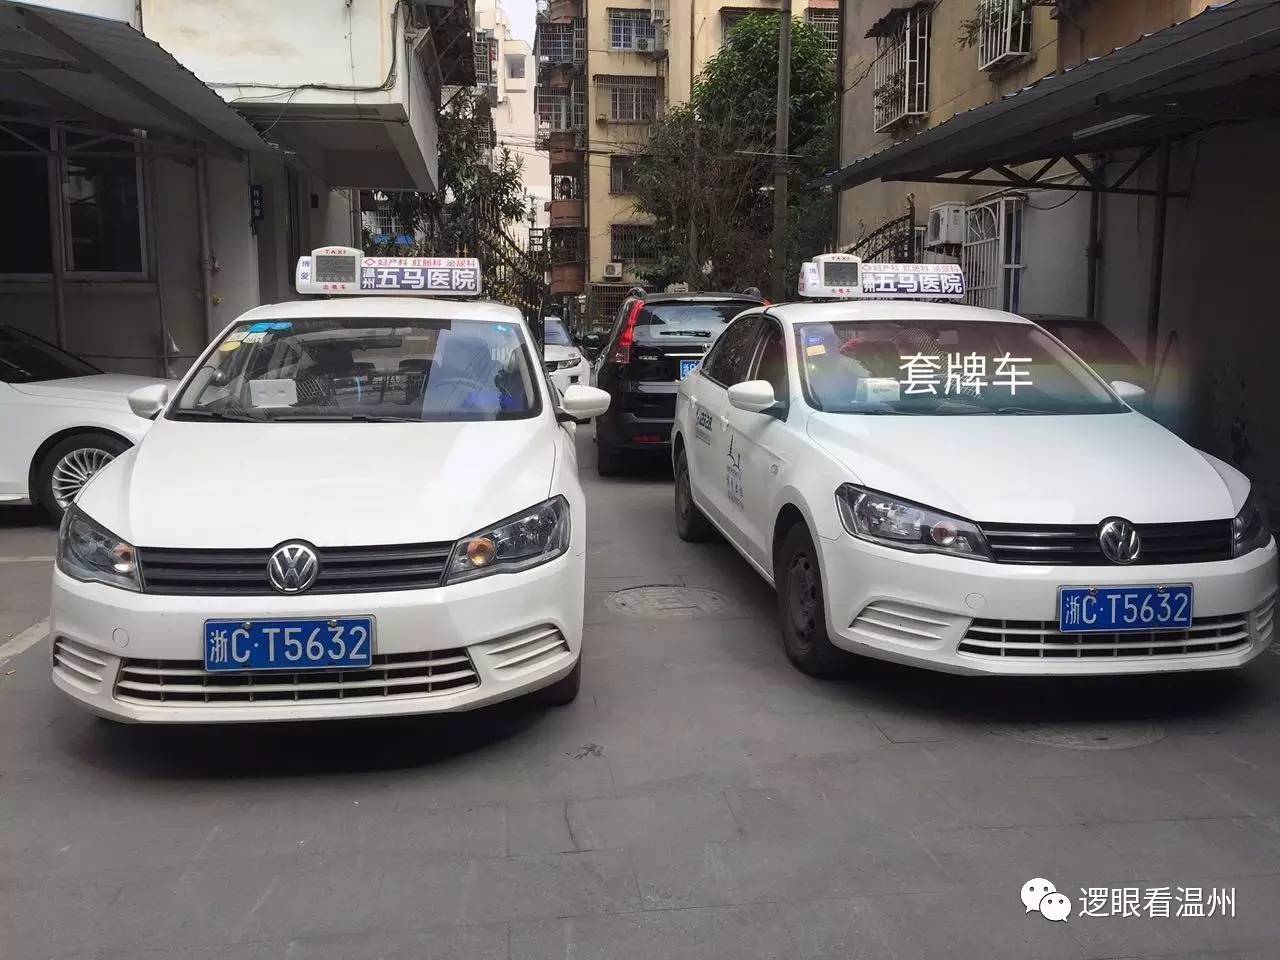 双胞胎出租车惊现温州市区,车主竟是为赚钱而"克隆"